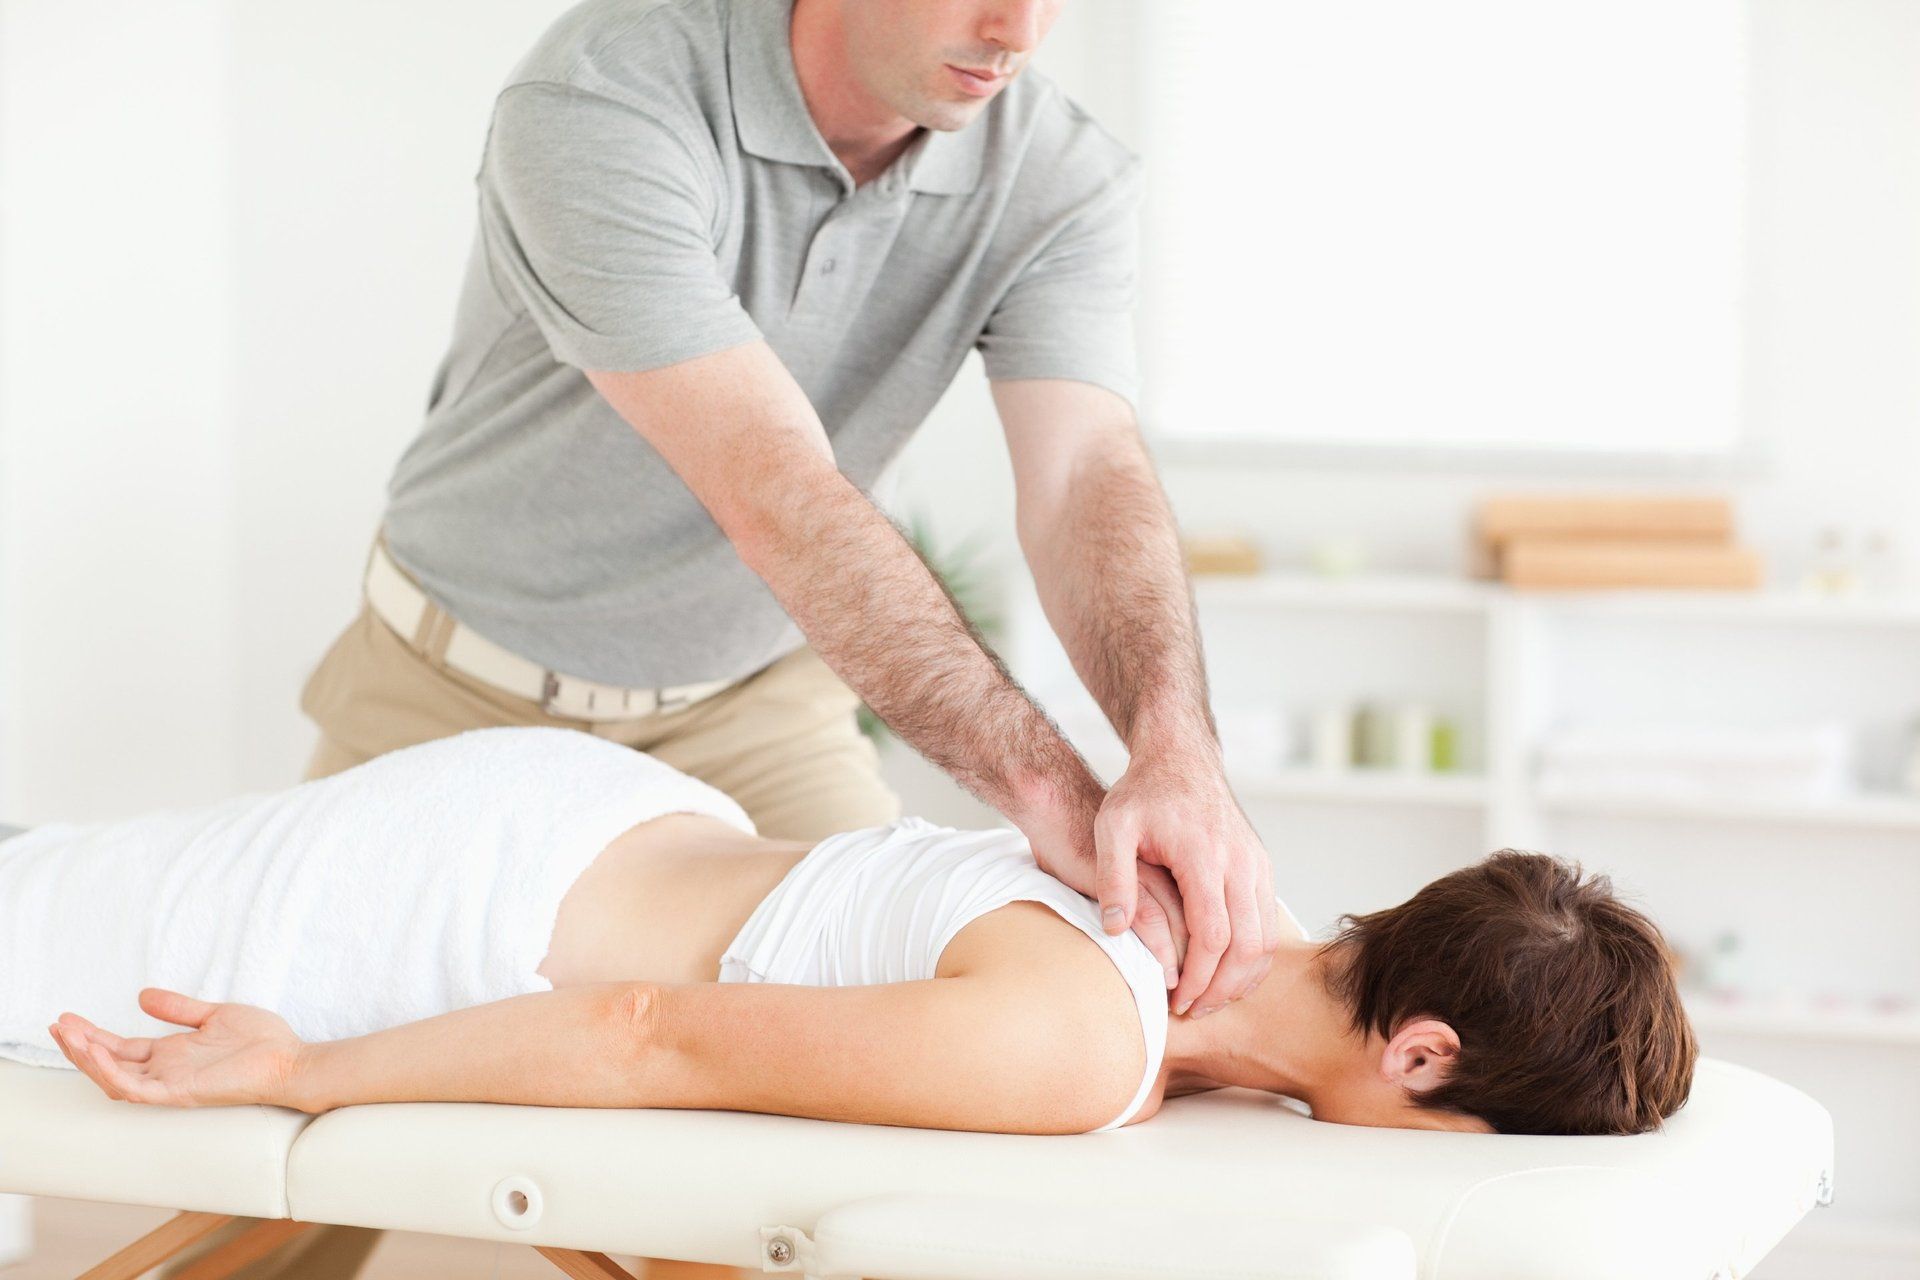 Massage guy. Фото работы мануального терапевта. Делает массаж девушке папы. Мужчина лежит на спине во время массажа.